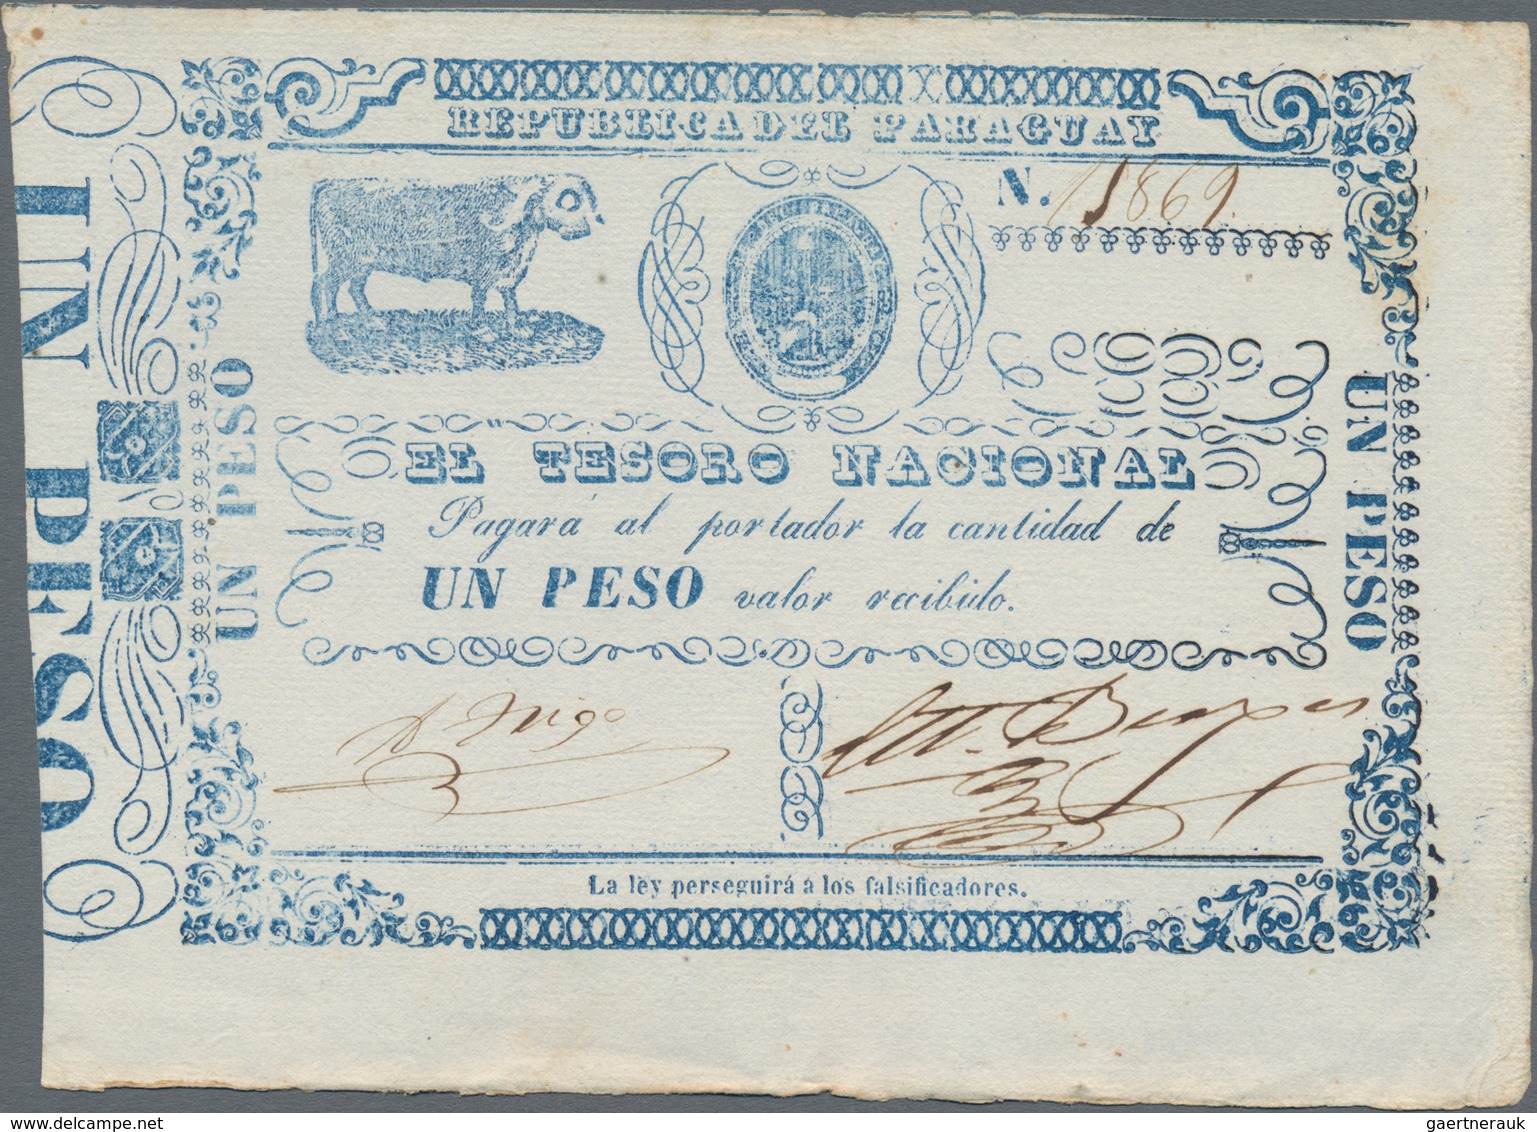 Paraguay: El Tesorio Nacional 1 Peso ND(1865), P.21 In XF/XF+ Condition - Paraguay